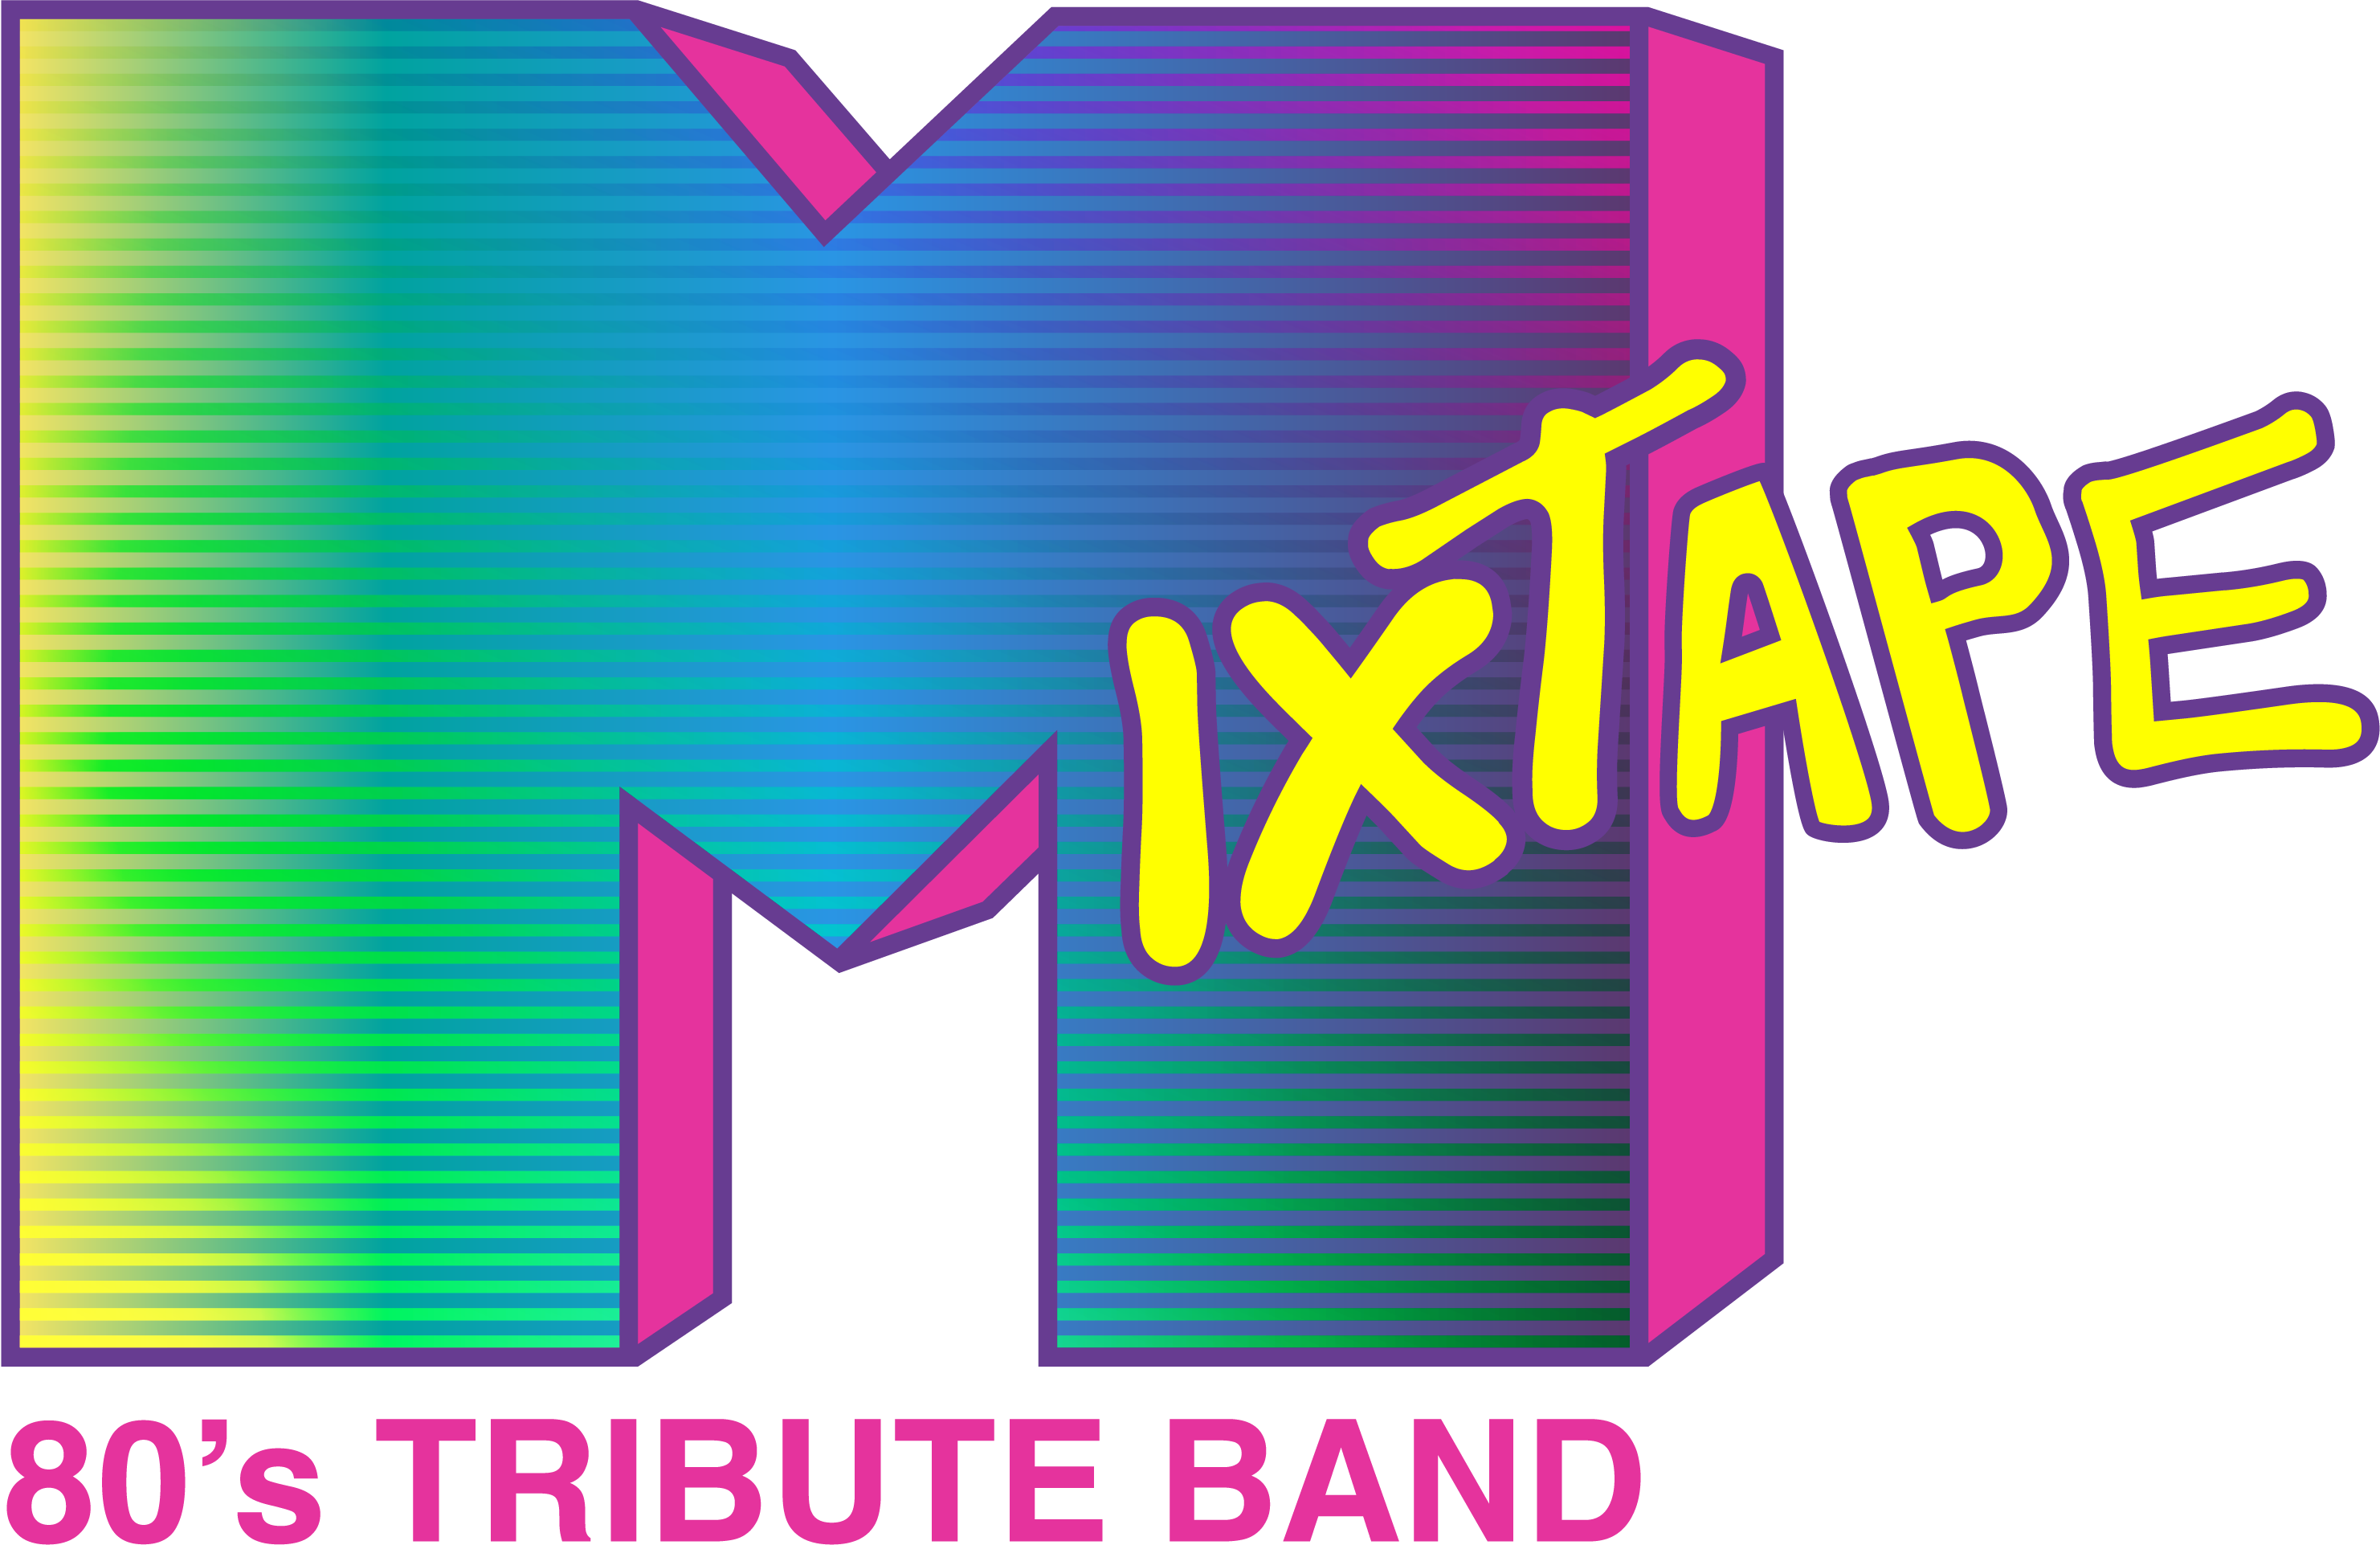 Mixtape Logo - Mixtape 80s Band (2963x1923)